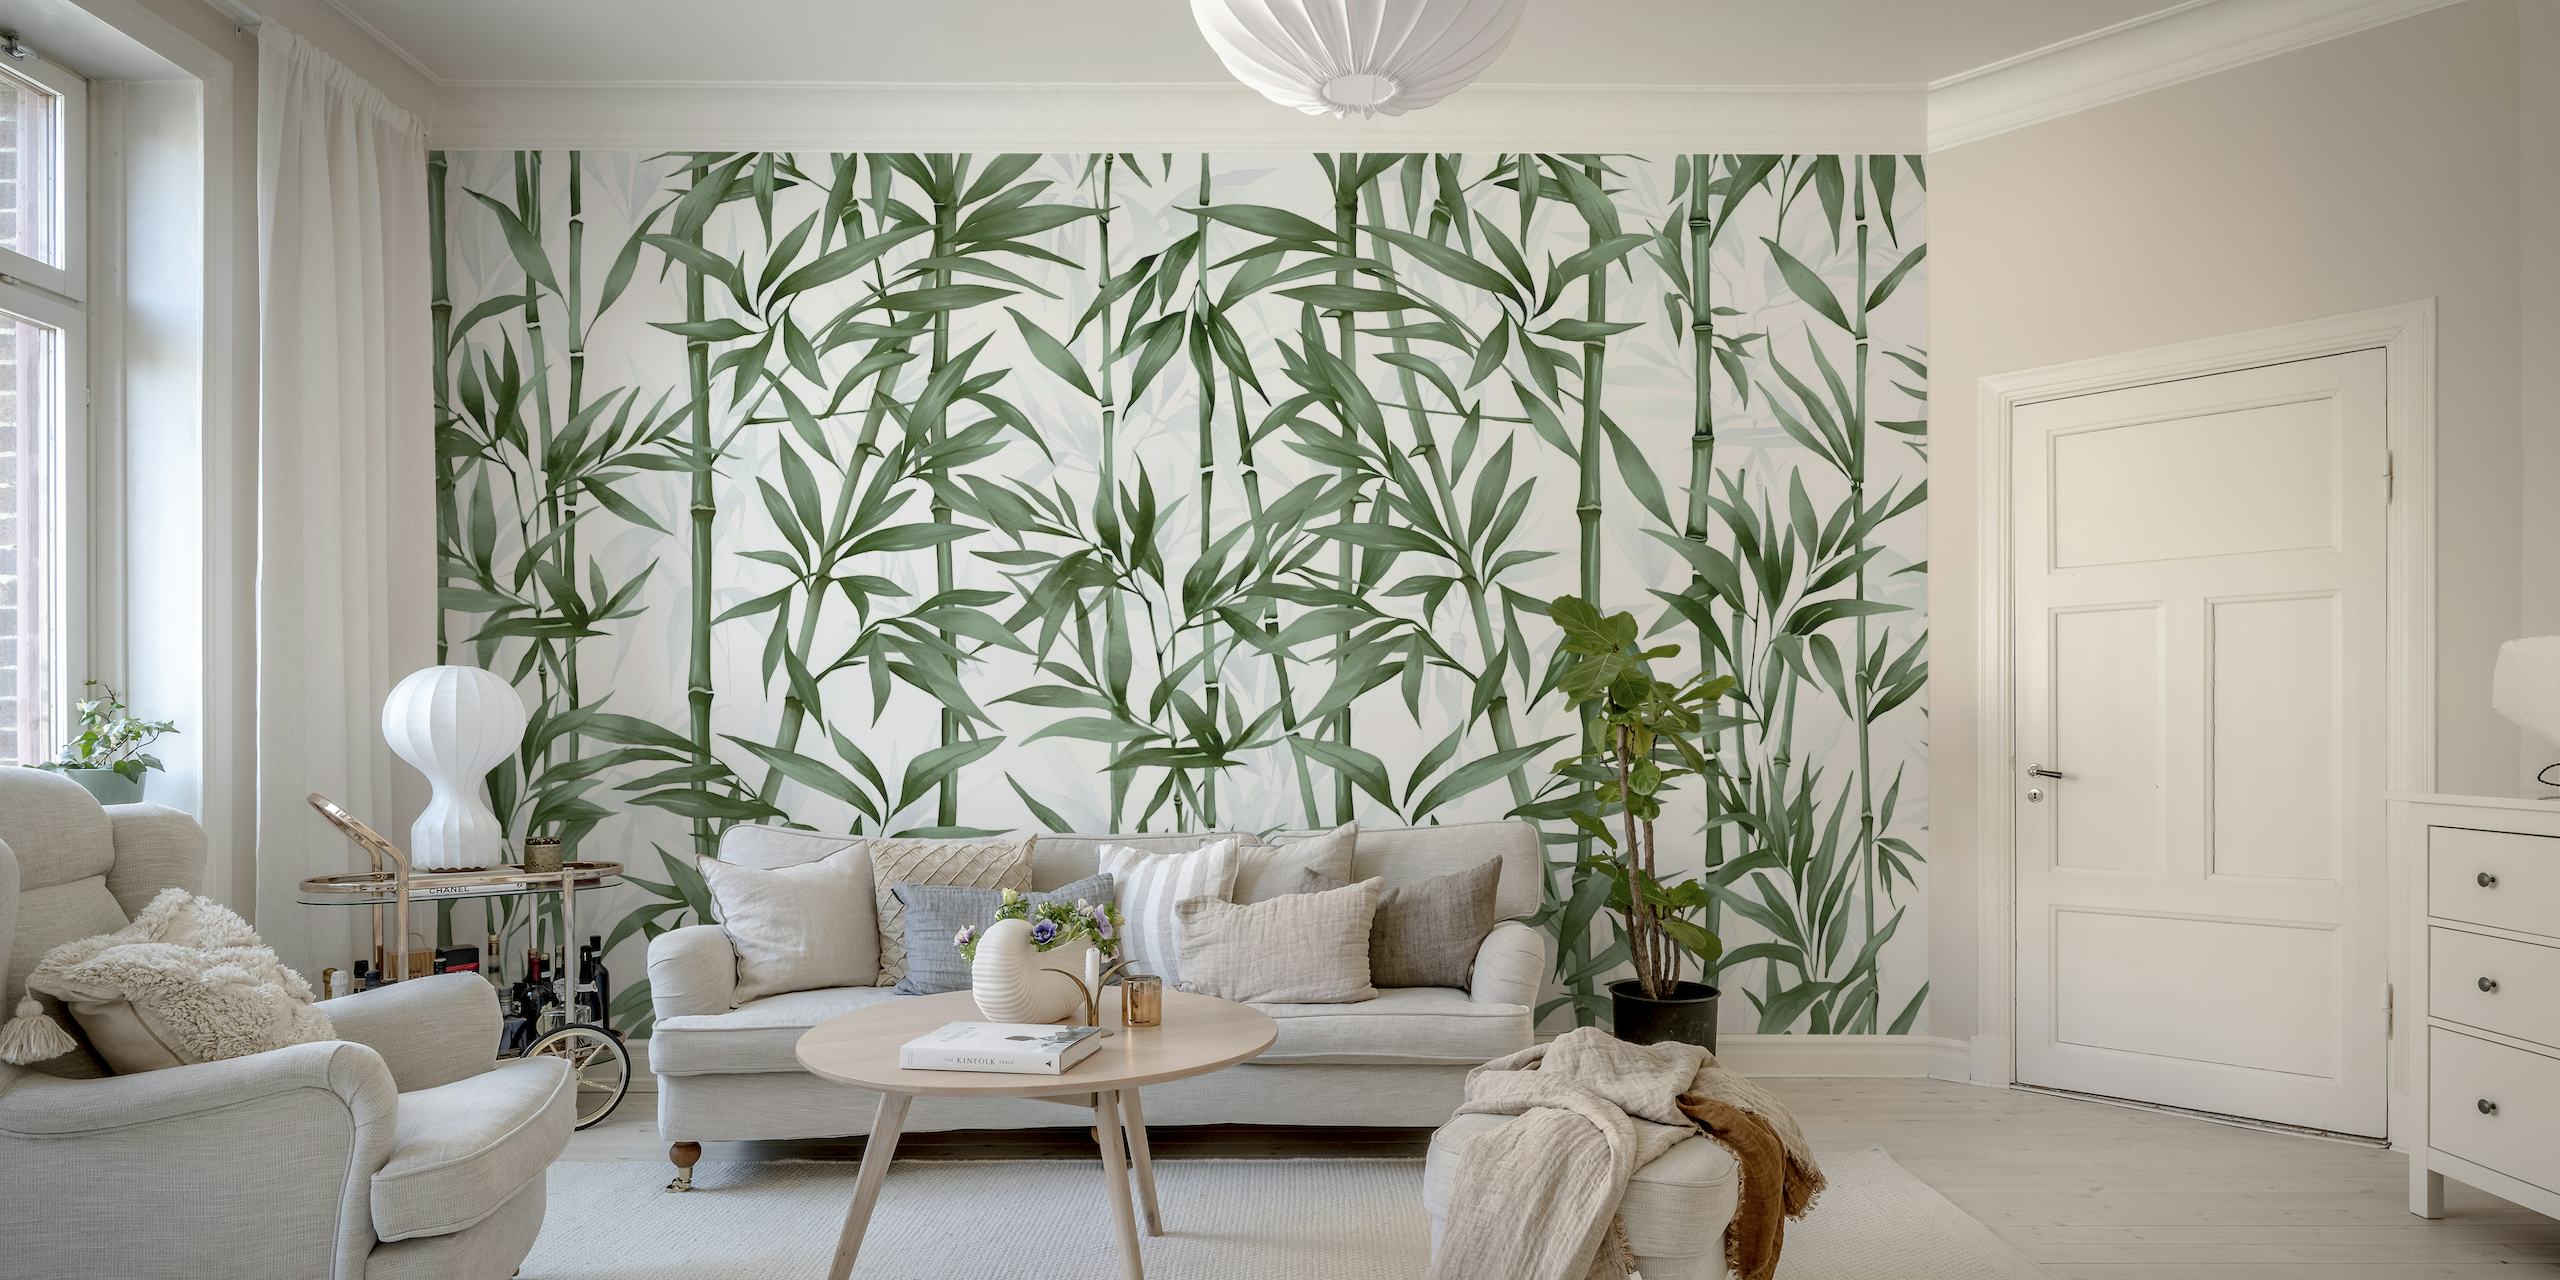 Groene bamboestelen muurschildering voor een rustig interieur